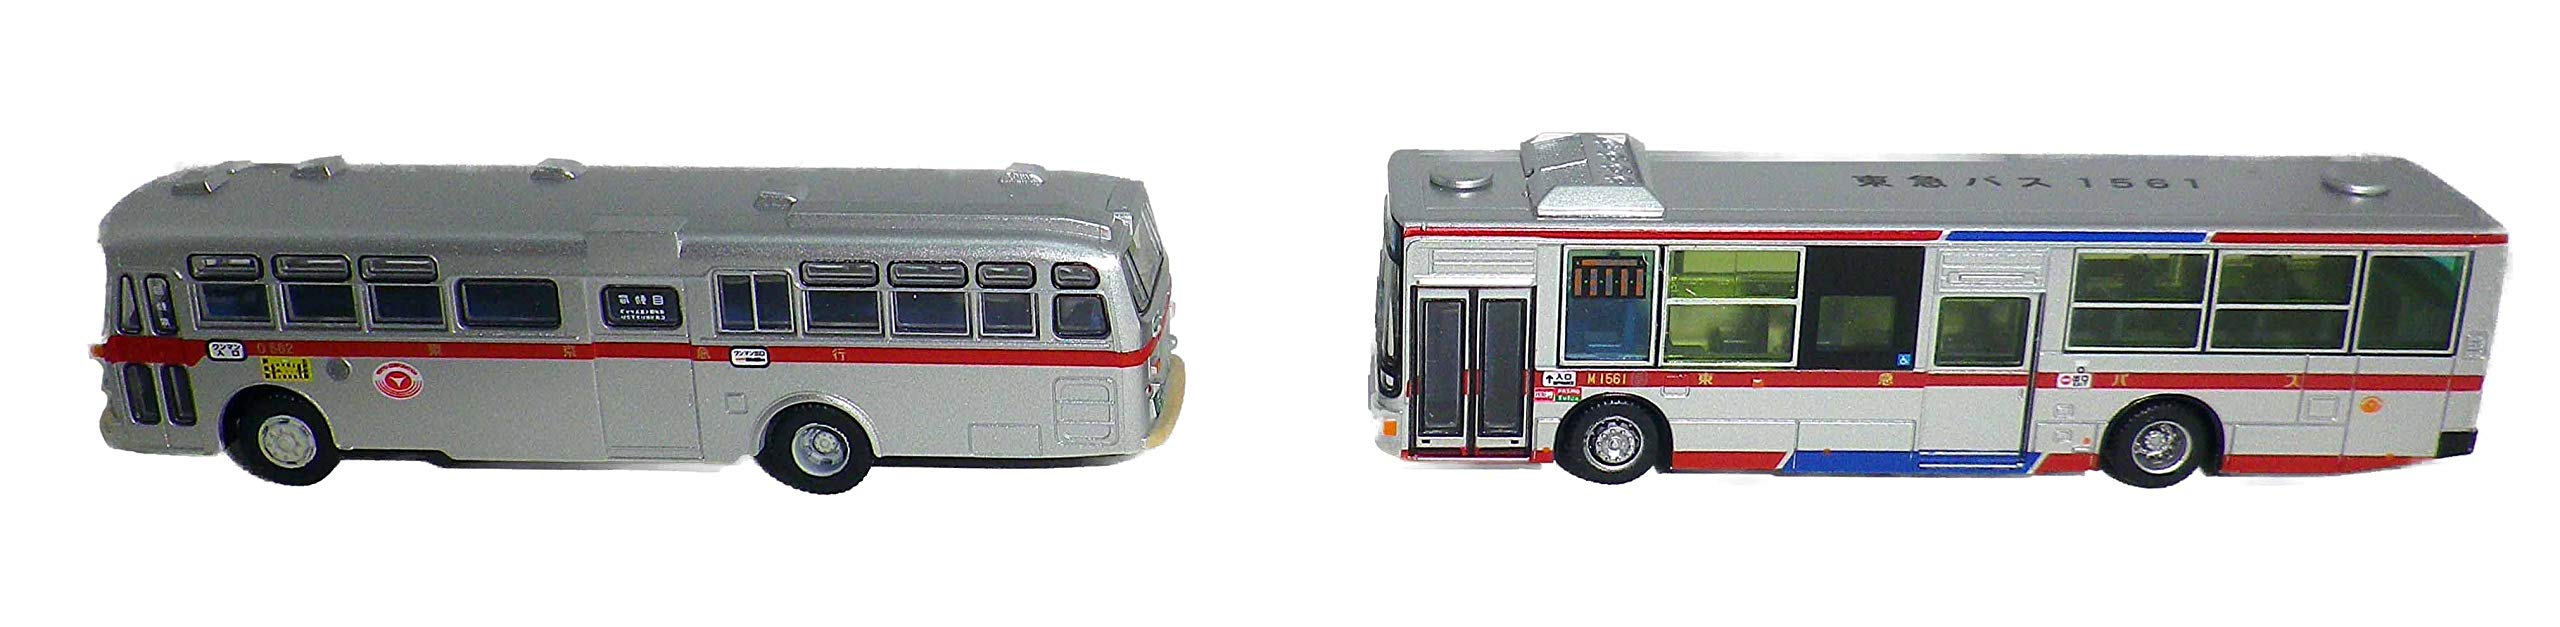 Tomytec Bus-Sammlung – Originales neues und altes Langwagen-Set, Tokyu-Bus-Edition